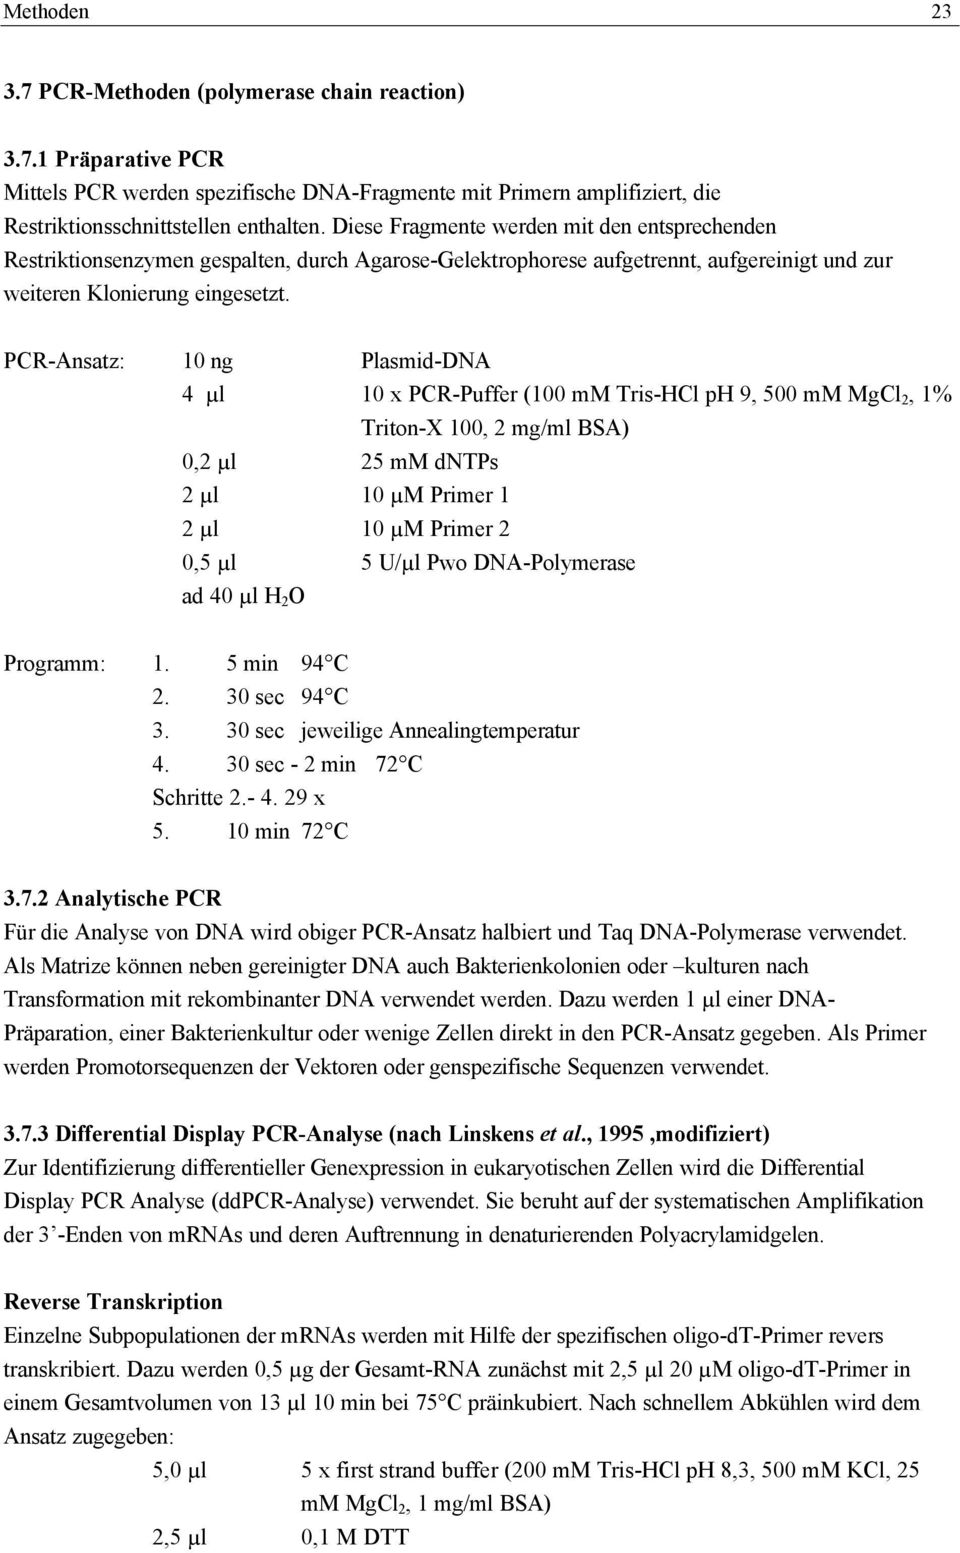 PCR-Ansatz: 10 ng Plasmid-DNA 4 µl 10 x PCR-Puffer (100 mm Tris-HCl ph 9, 500 mm MgCl 2, 1% Triton-X 100, 2 mg/ml BSA) 0,2 µl 25 mm dntps 2 µl 10 µm Primer 1 2 µl 10 µm Primer 2 0,5 µl 5 U/µl Pwo